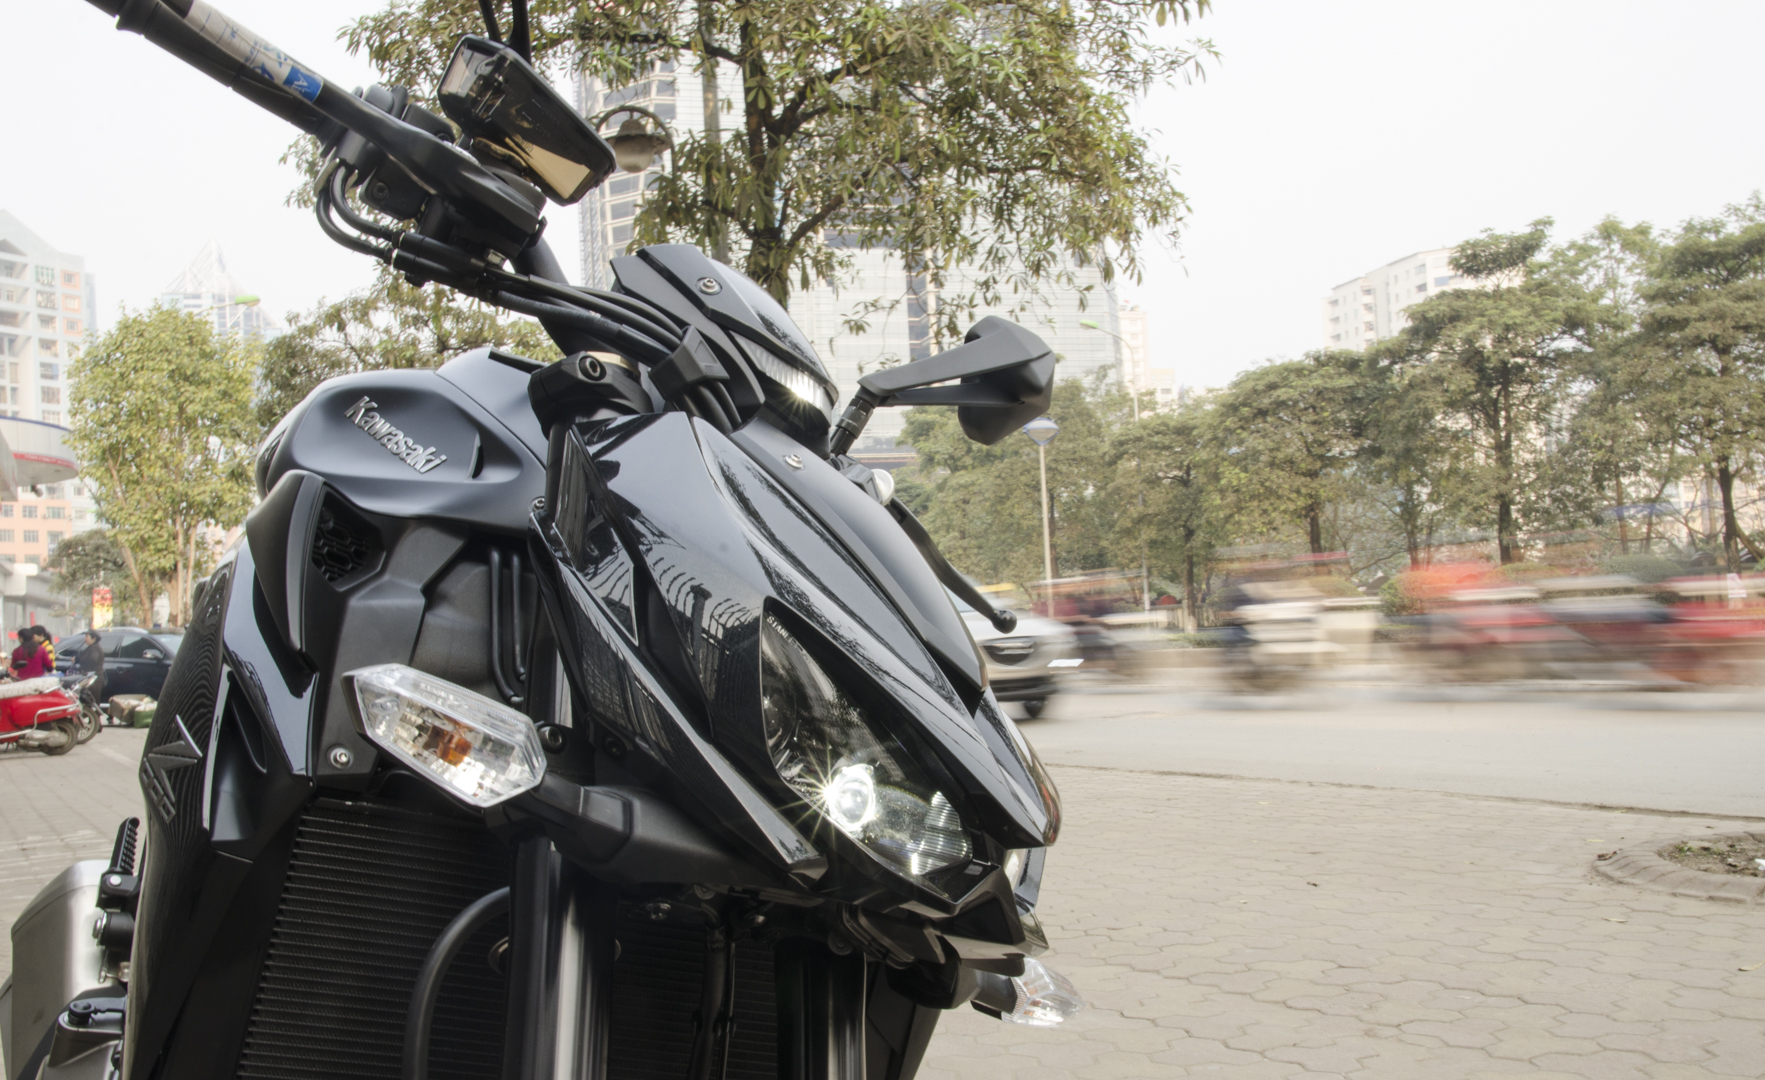 Cận cảnh Kawasaki Z1000 2015 Black Edition tại Hà Nội - Tinmoi.vn